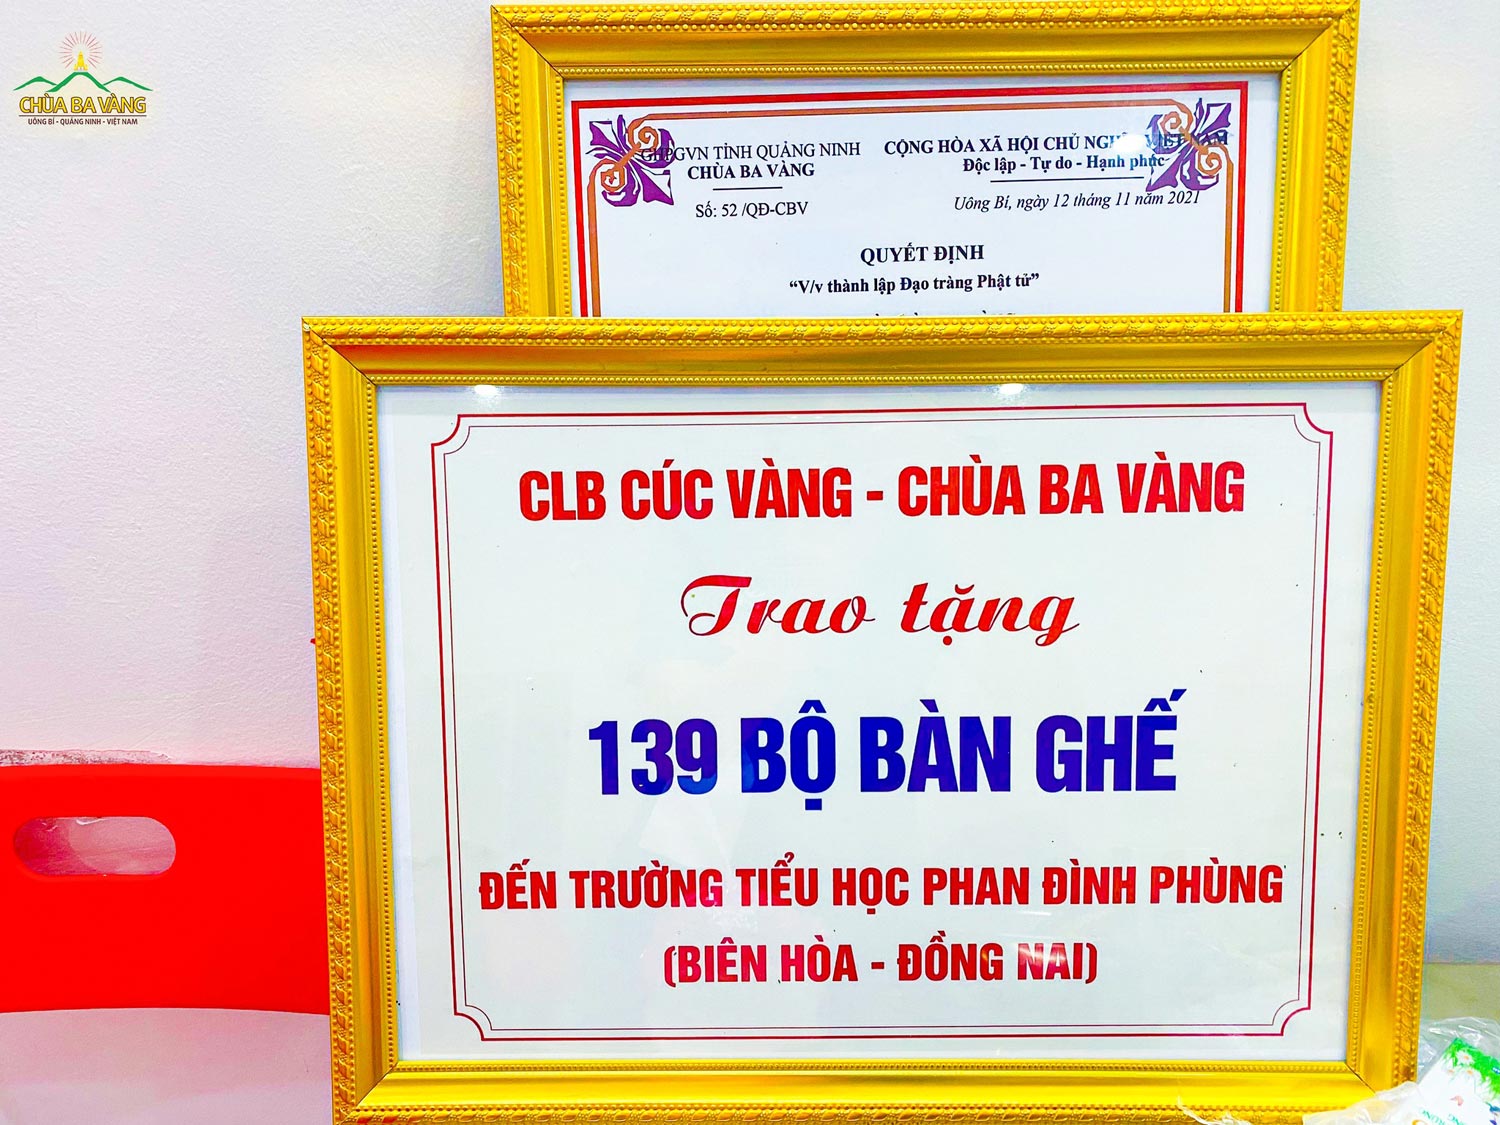 Biển trao tặng của CLB Cúc Vàng tới Trường tiểu học Phan Đình Phùng TP. Biên Hòa, tỉnh Đồng Nai